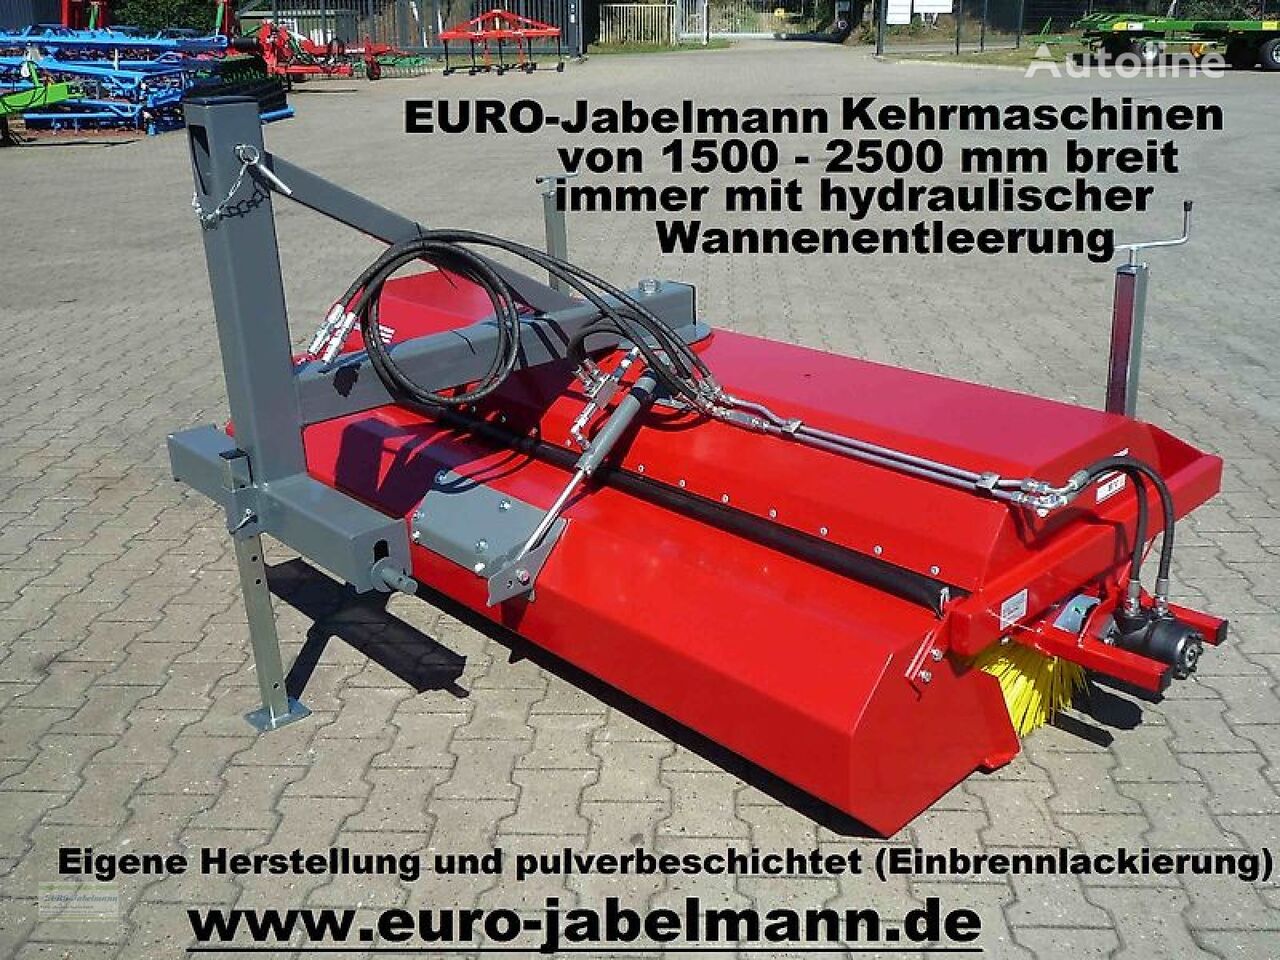 καινούρια βούρτσα Euro-Jabelmann Kehrmaschinen, NEU, Breiten 1500 - 2500 mm, eigene Herstellung